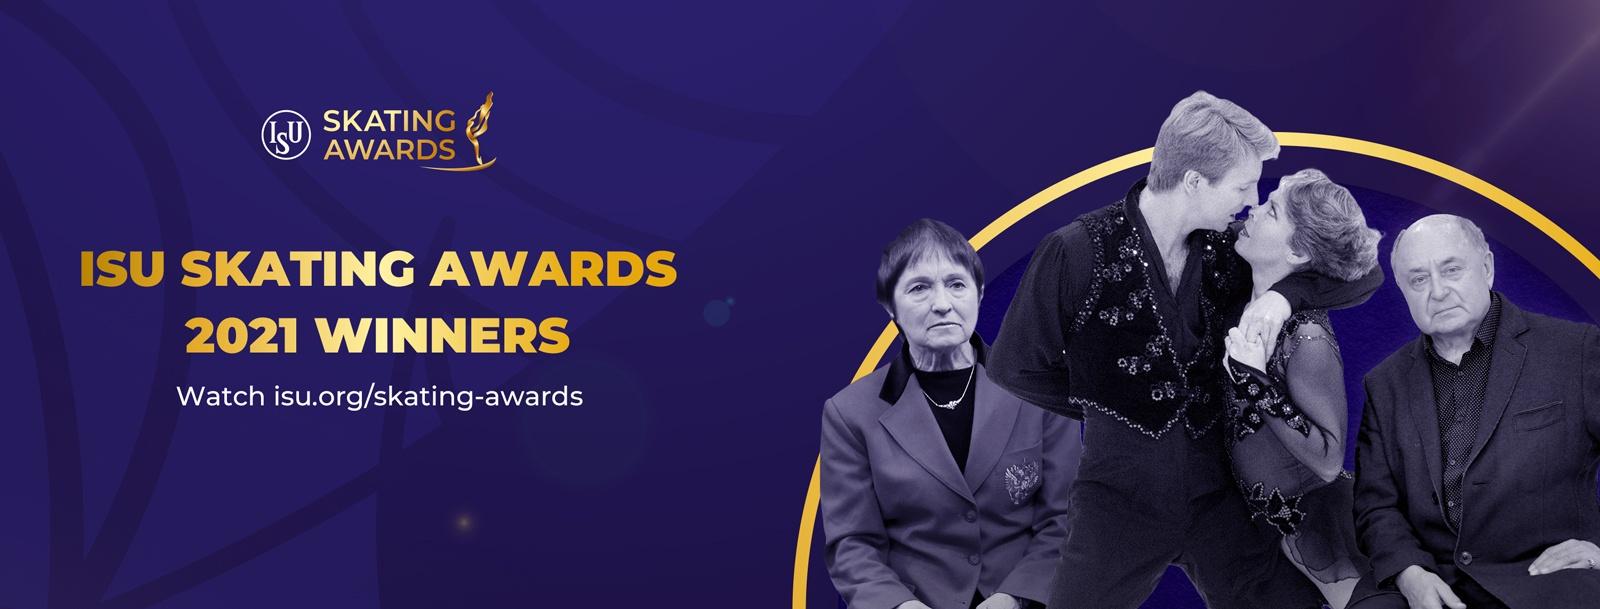 ISU Awards Winner header Facebook zk 07062021